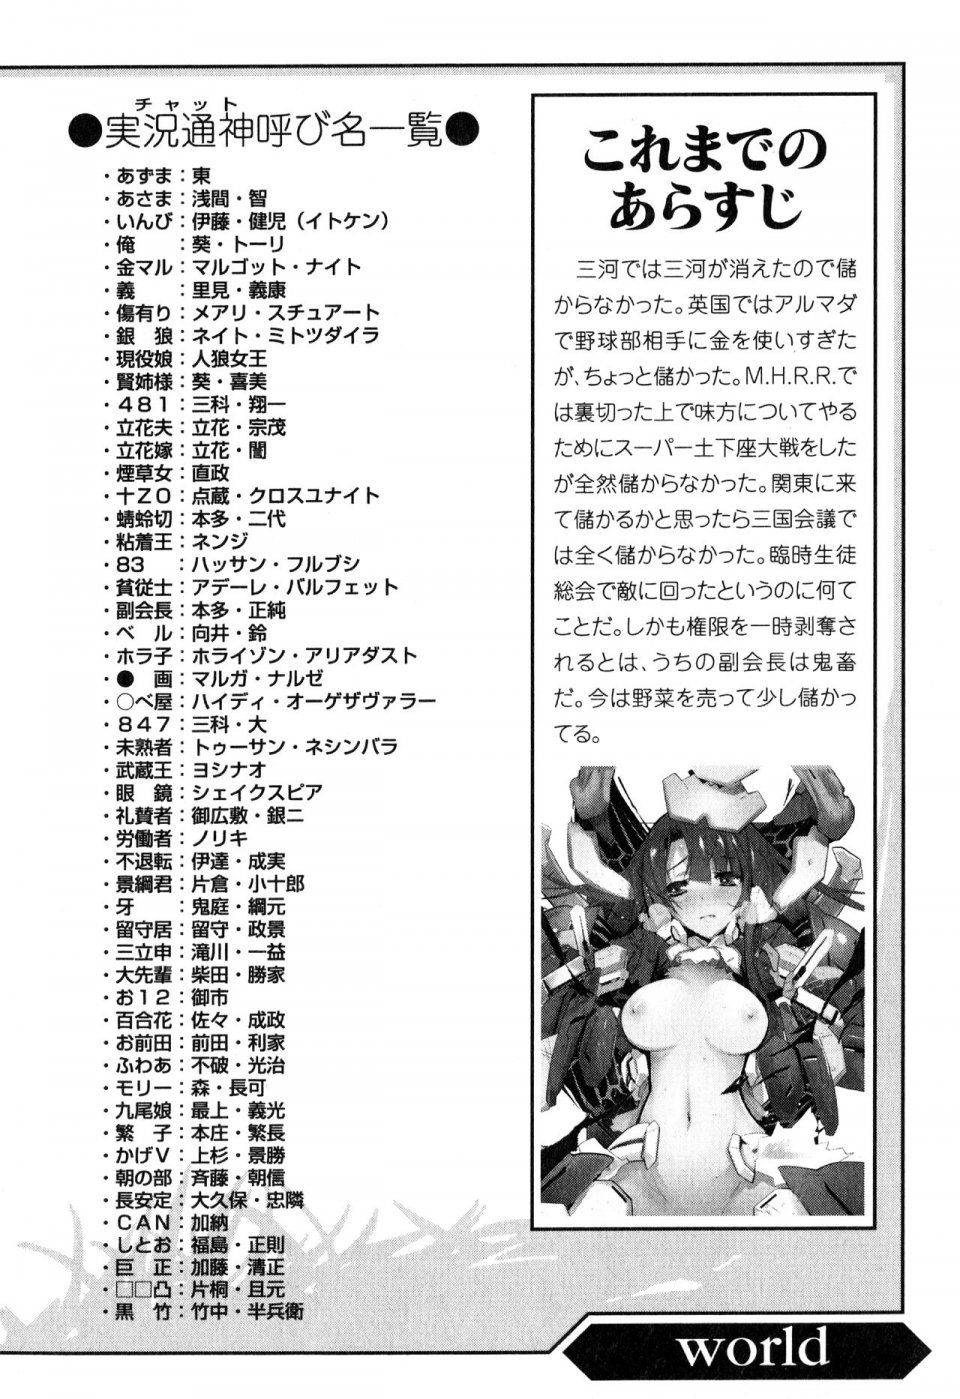 Kyoukai Senjou no Horizon LN Vol 11(5A) - Photo #17